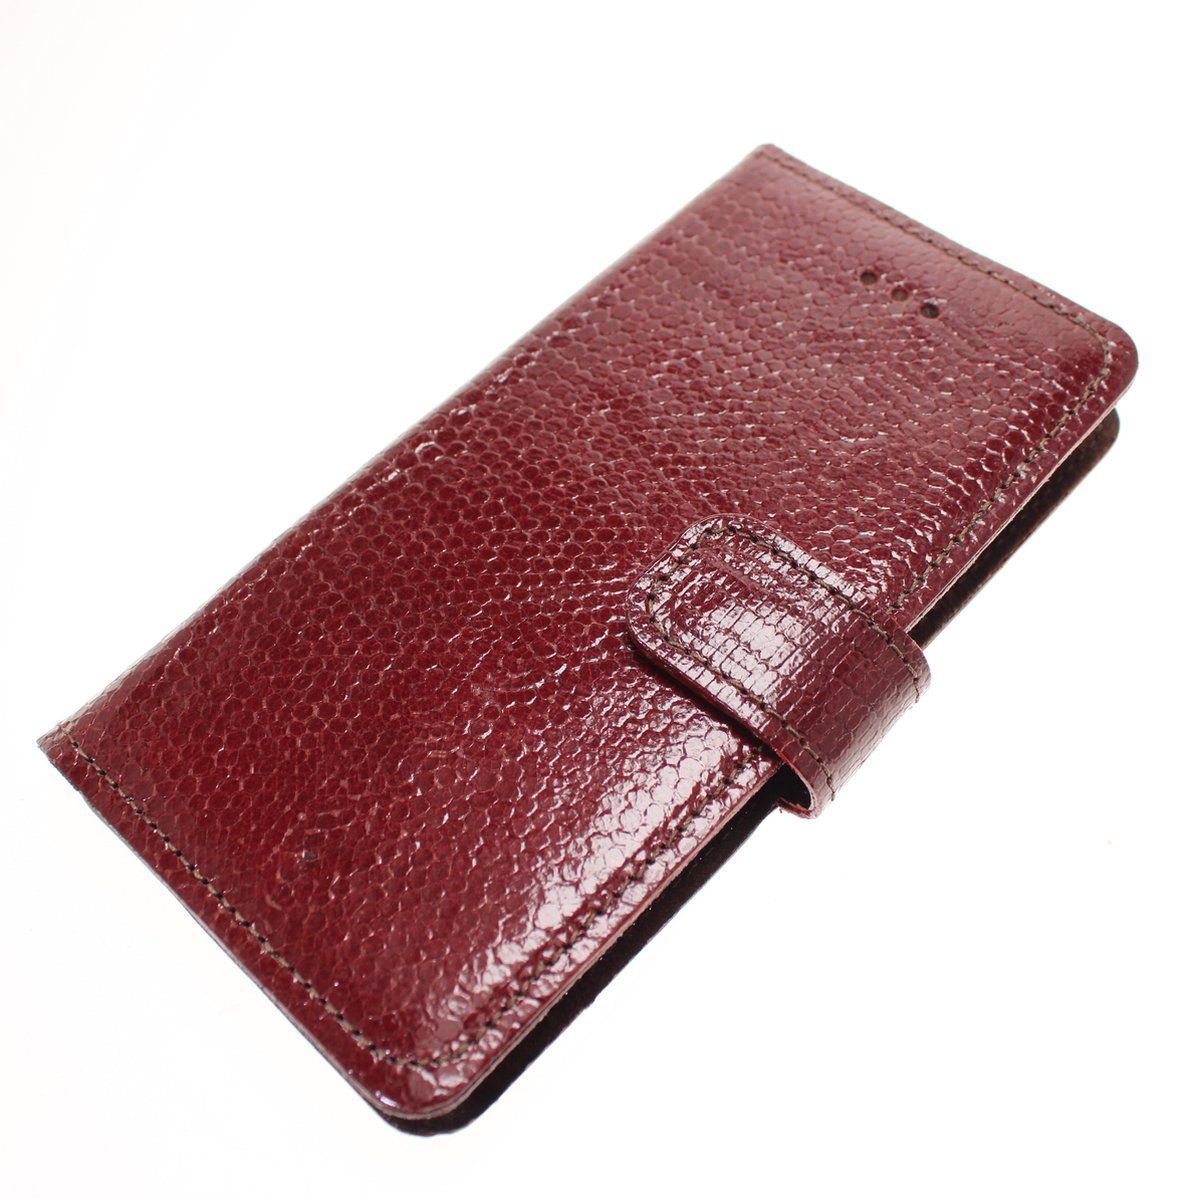 Made-NL Handgemaakte ( Apple iPhone 11 Pro Max ) book case Rood slangenprint reliëf kalfsleer